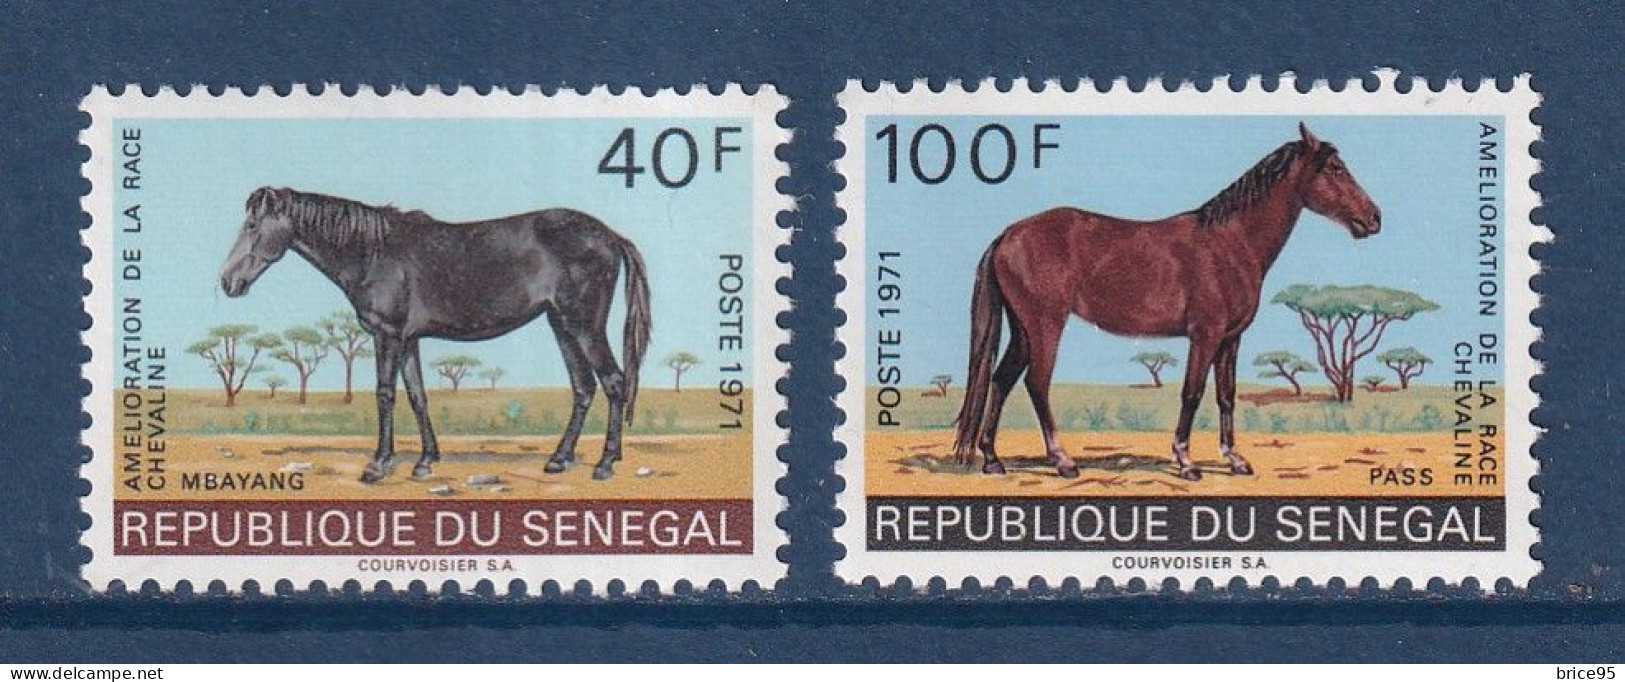 Sénégal - YT N° 343 Et 344 ** - Neuf Sans Charnière - 1971 - Sénégal (1960-...)